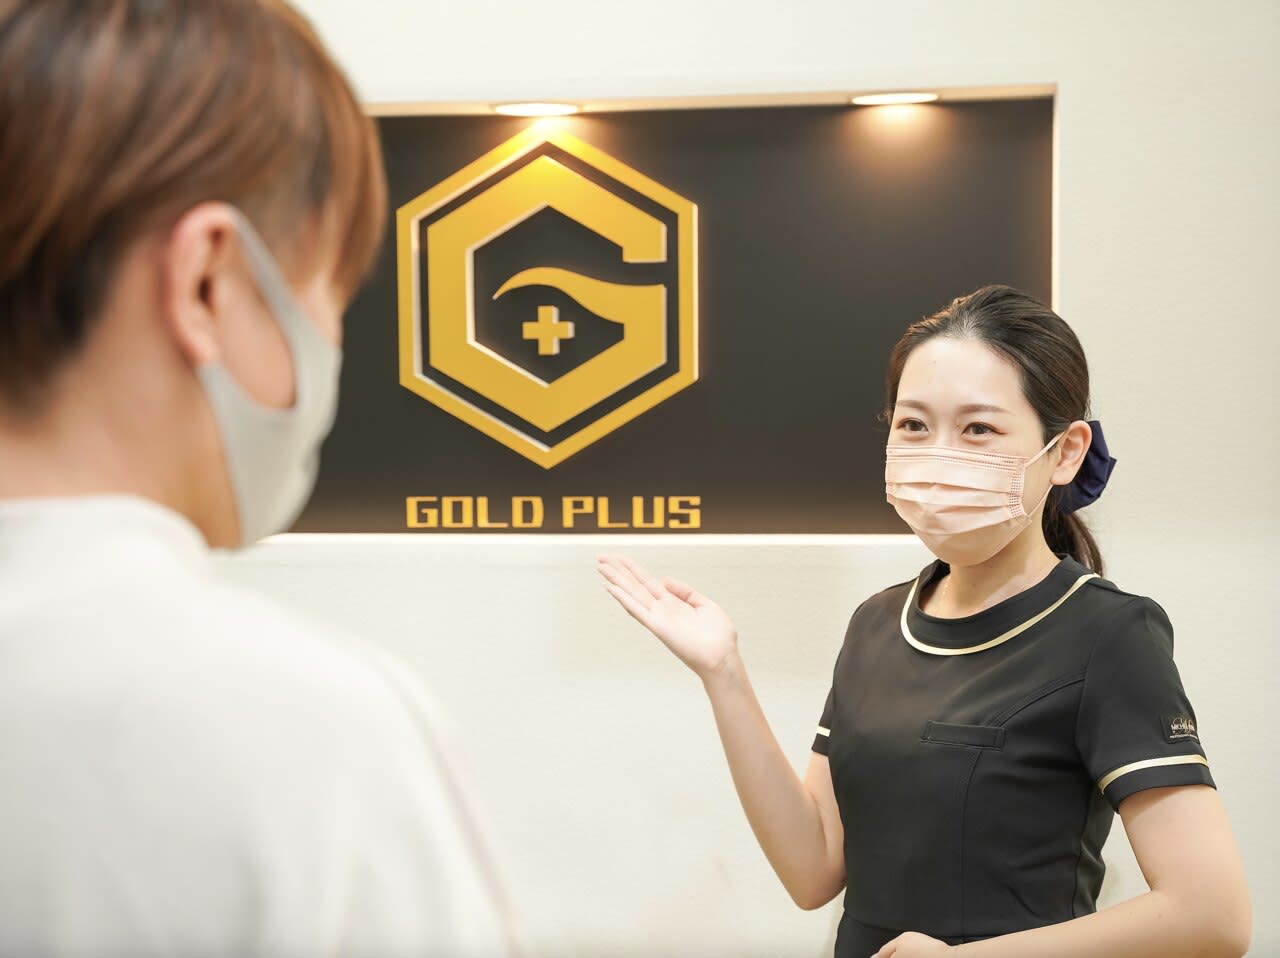 メンズ脱毛スキンケア GOLD PLUS 甲府店のアイキャッチ画像